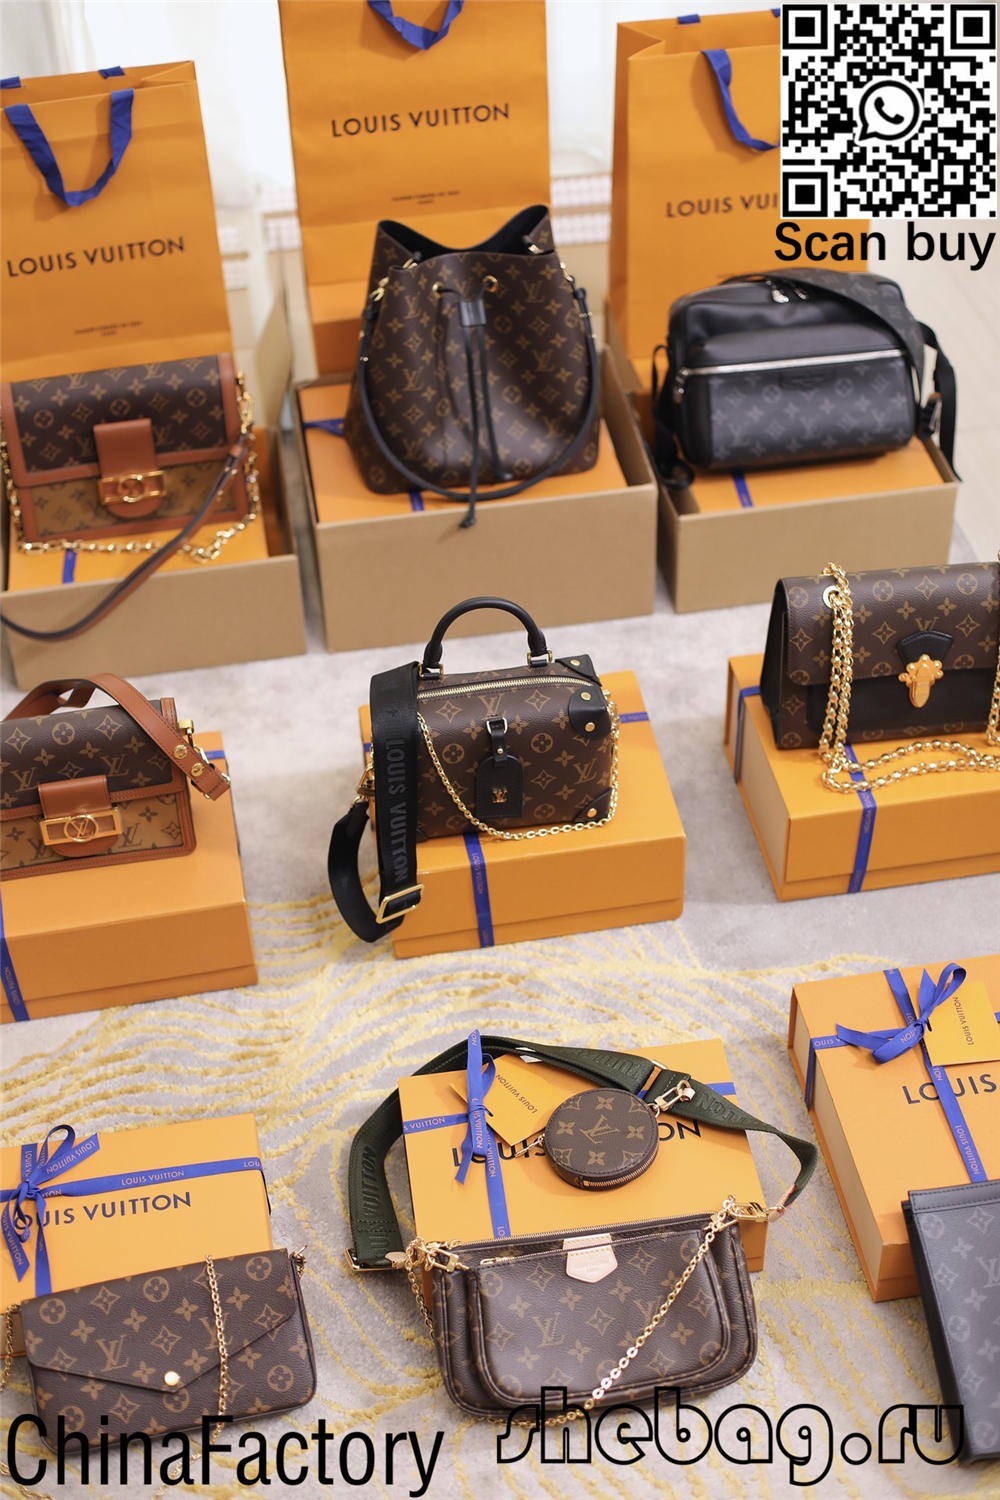 Bolsas Louis Vuitton réplica china por xunto barato (2022 máis recente)-Best Quality Fake Louis Vuitton Bag Online Store, Réplica de bolsa de deseño ru